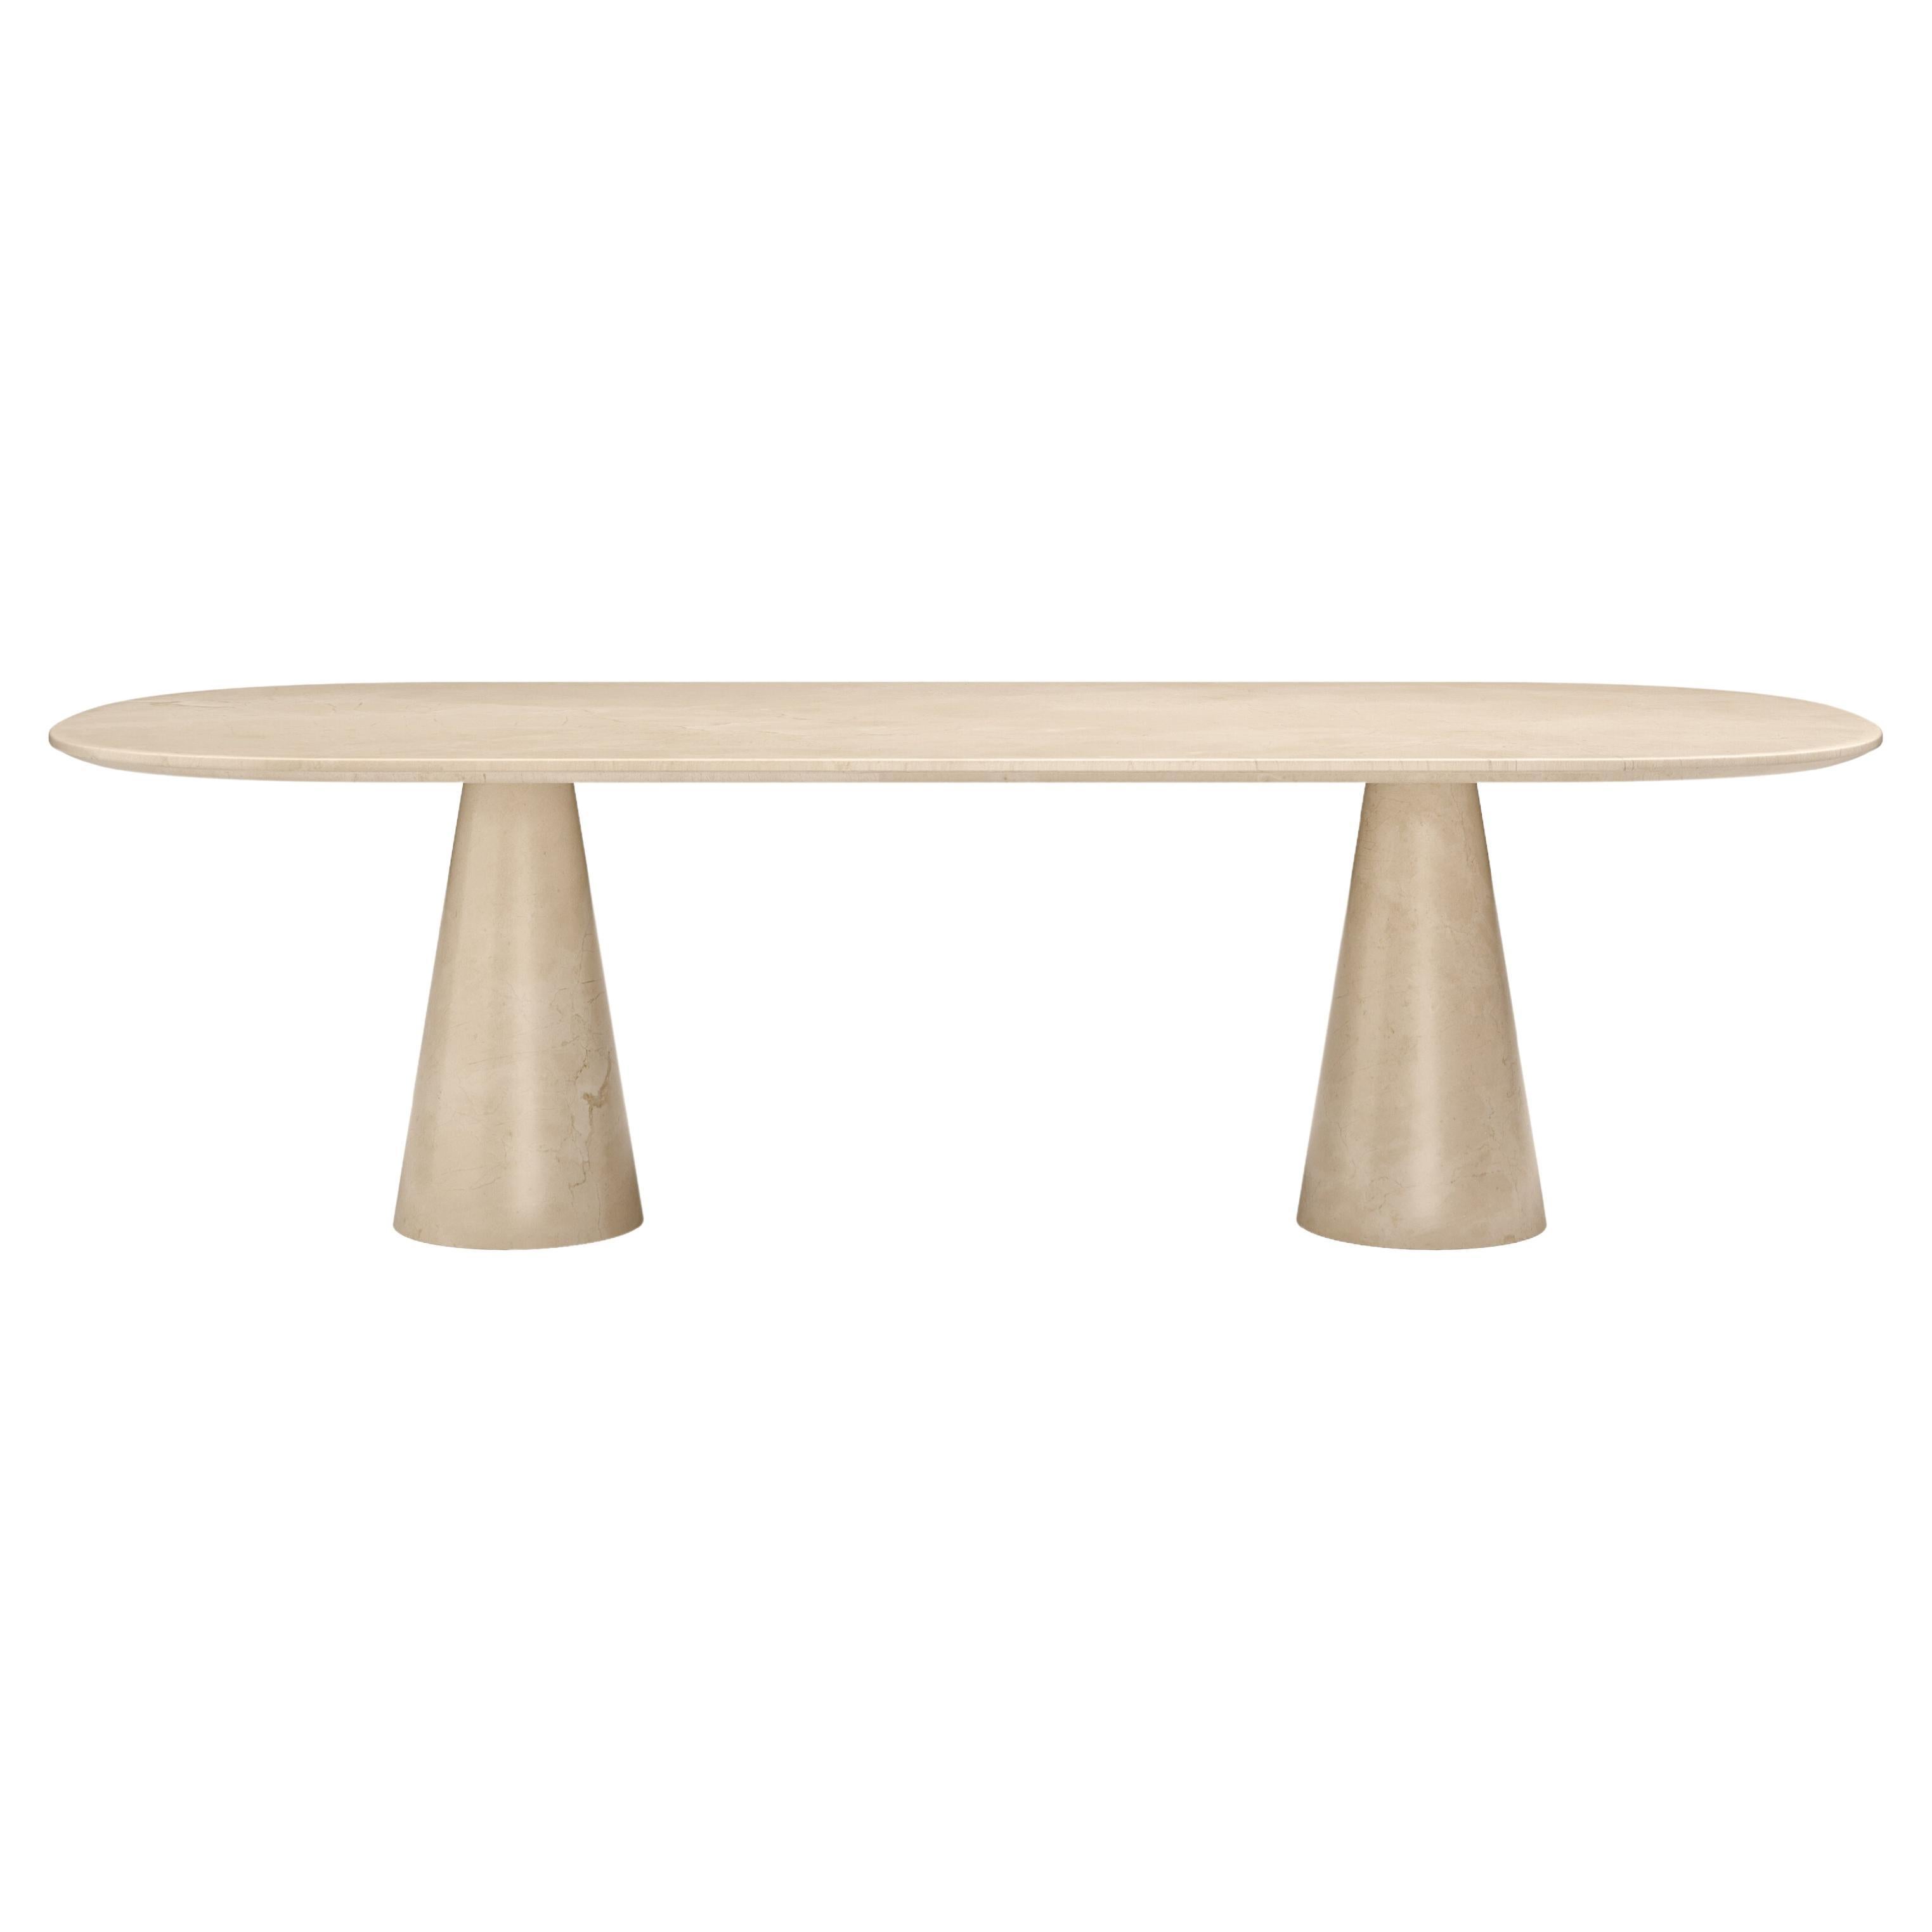 FORM(LA) Cono Oval Dining Table 118”L x 48”W x 30”H Crema Marfil Marble